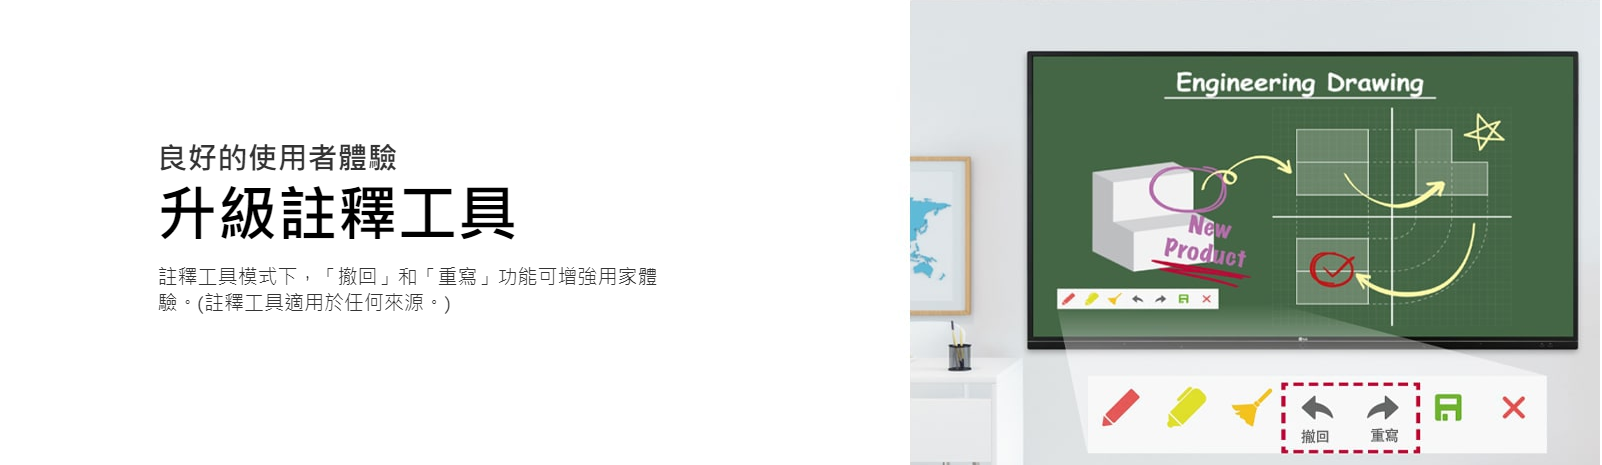 【已停產】LG 樂金 55TR3BG-B 55吋 觸控數碼顯示屏